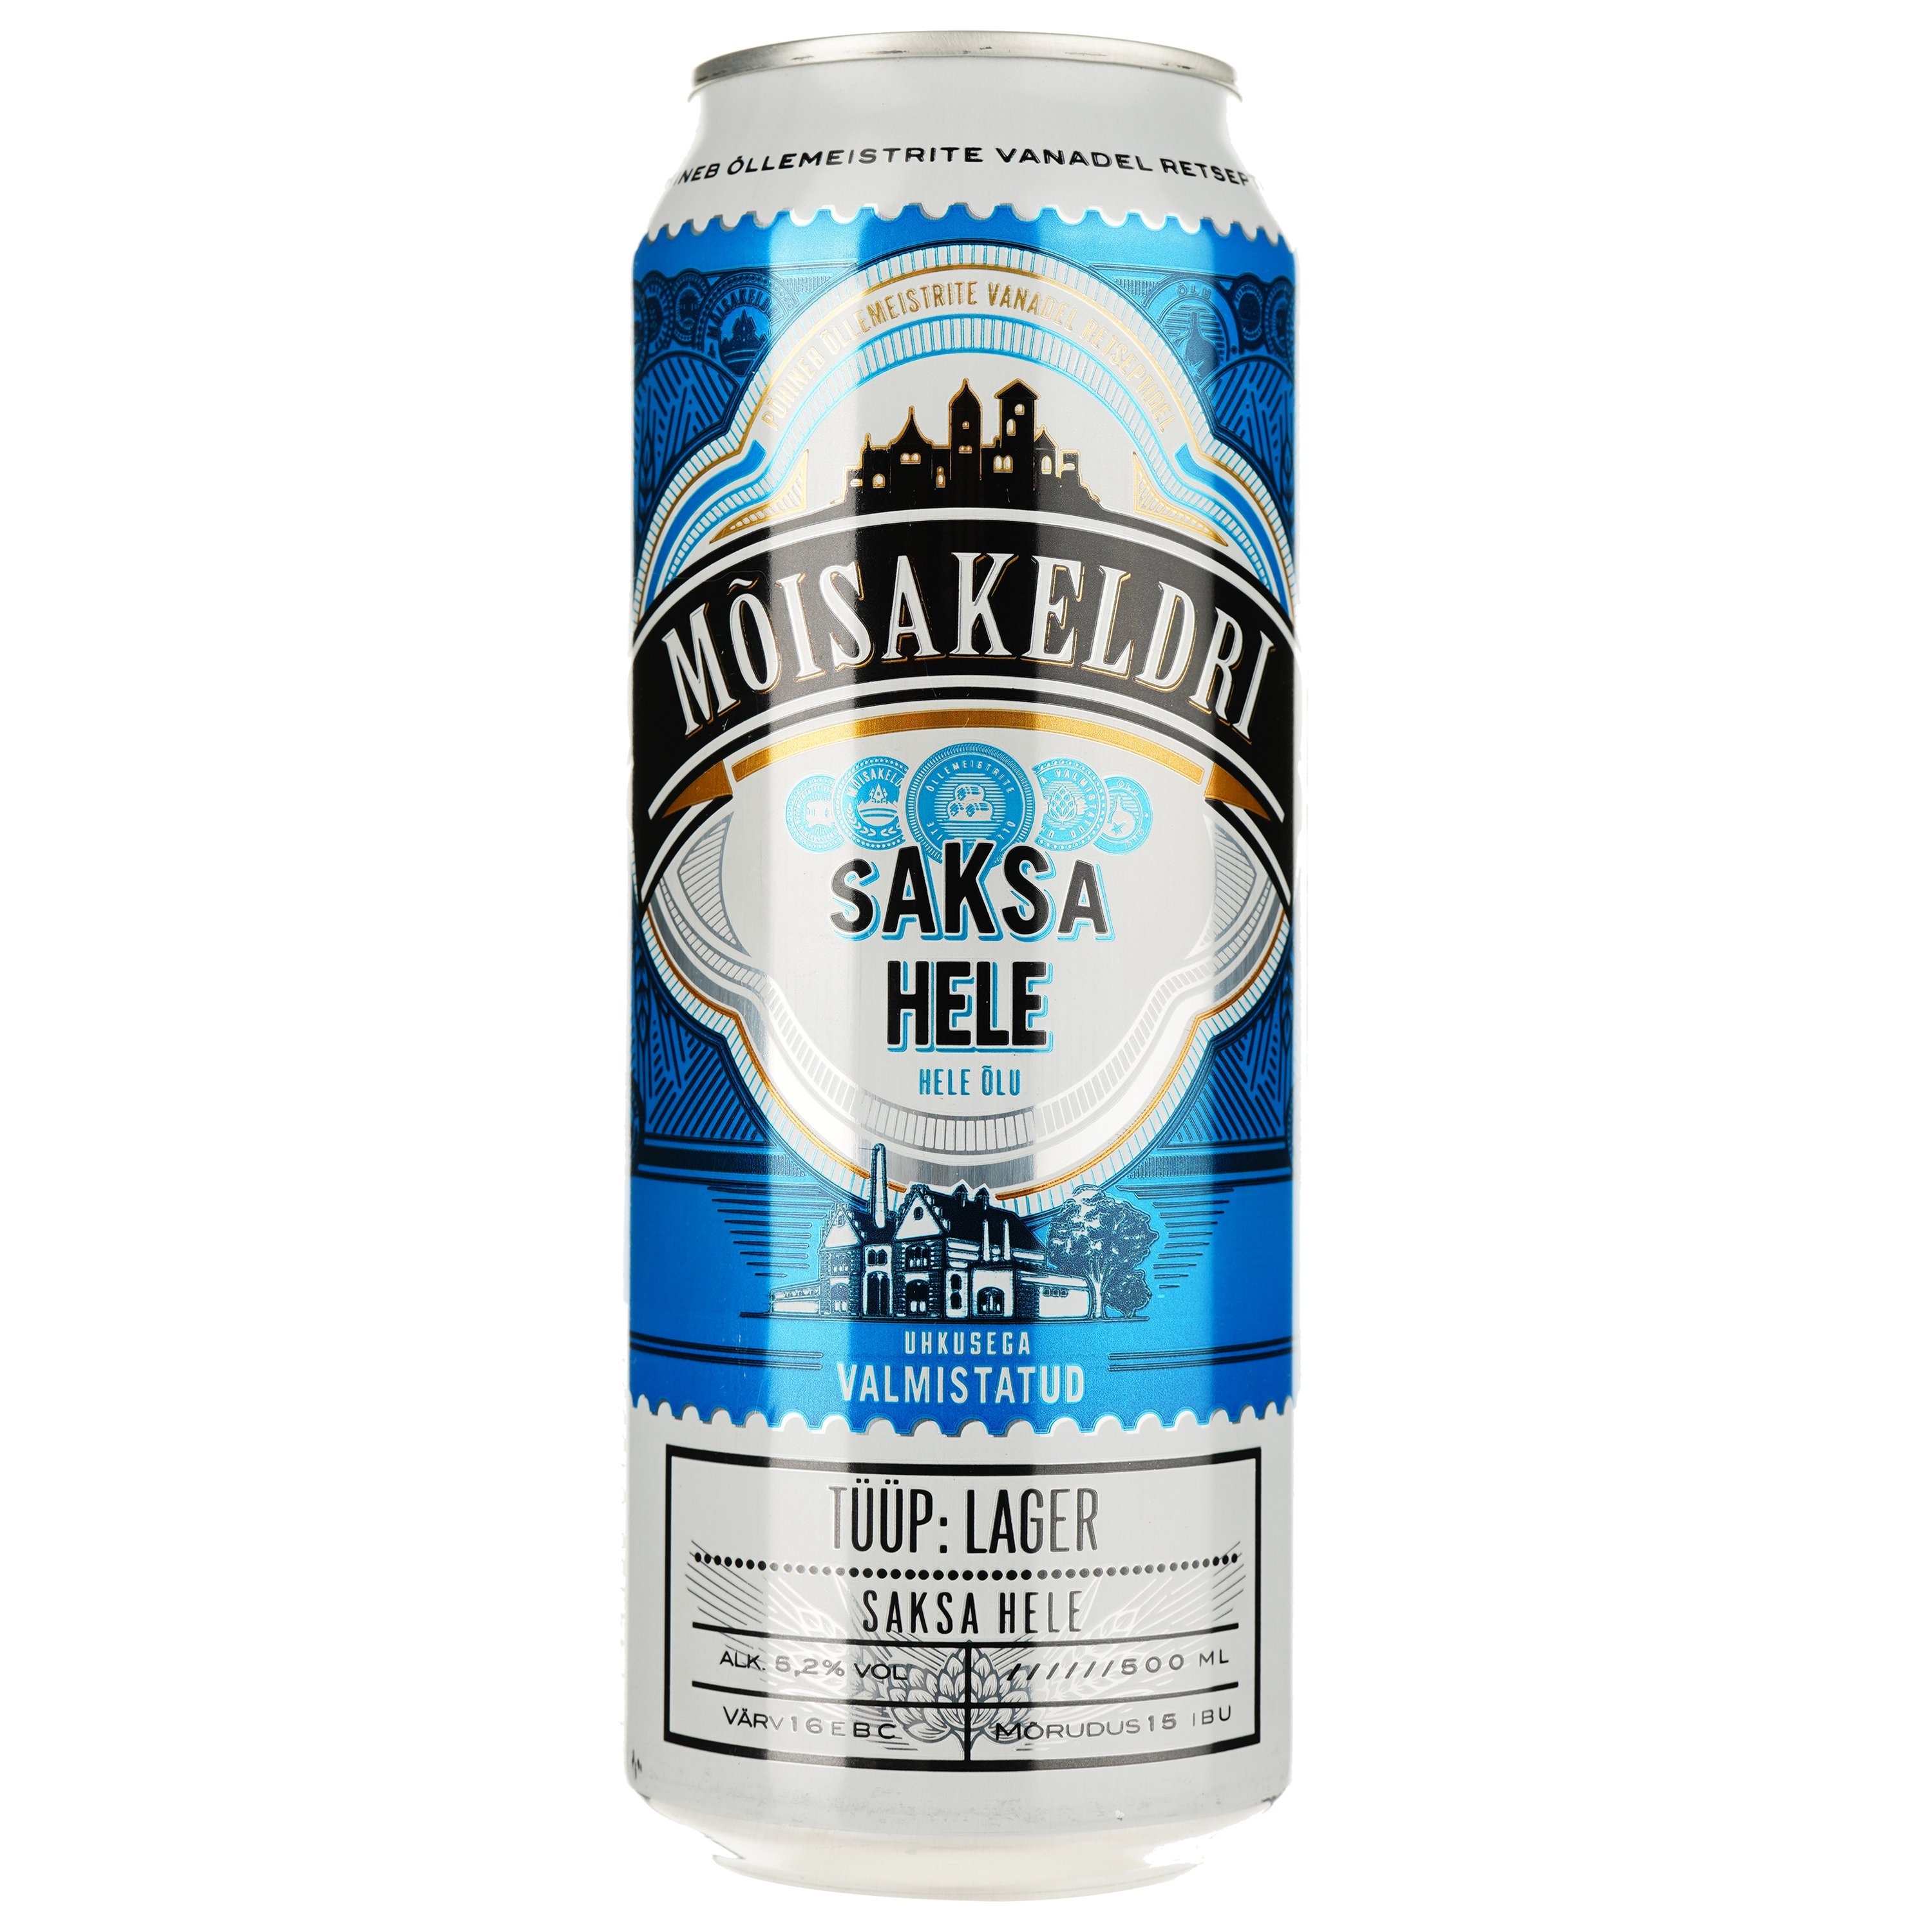 Пиво Moisakeldri Saksa Hele світле 5.2% 0.5 л з/б - фото 1